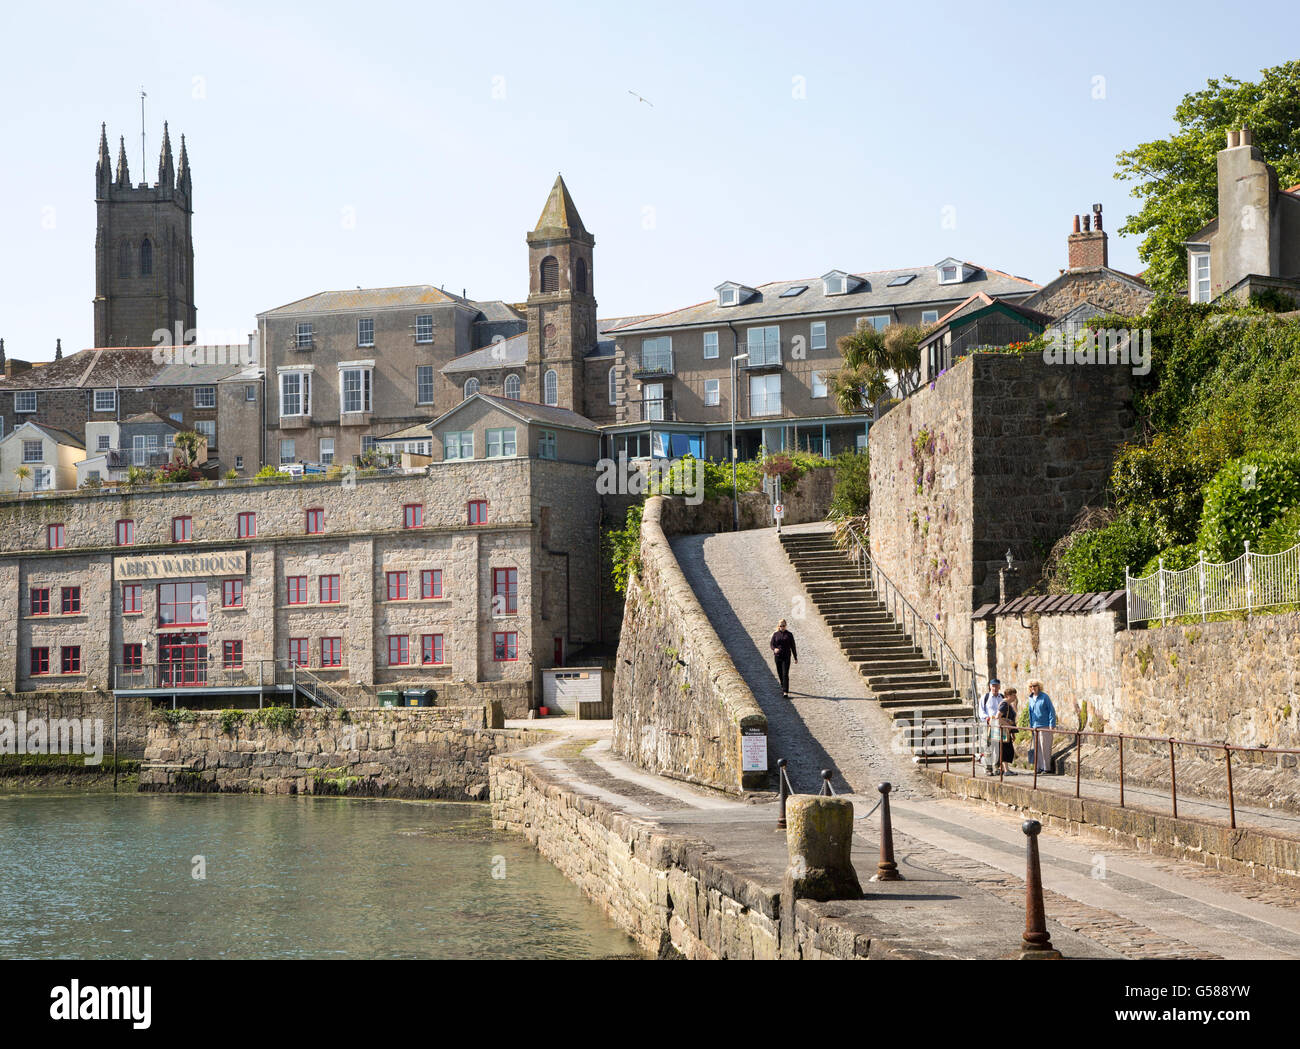 Historische Gebäude im Stadtzentrum von Penzance, Cornwall, England, UK Stockfoto